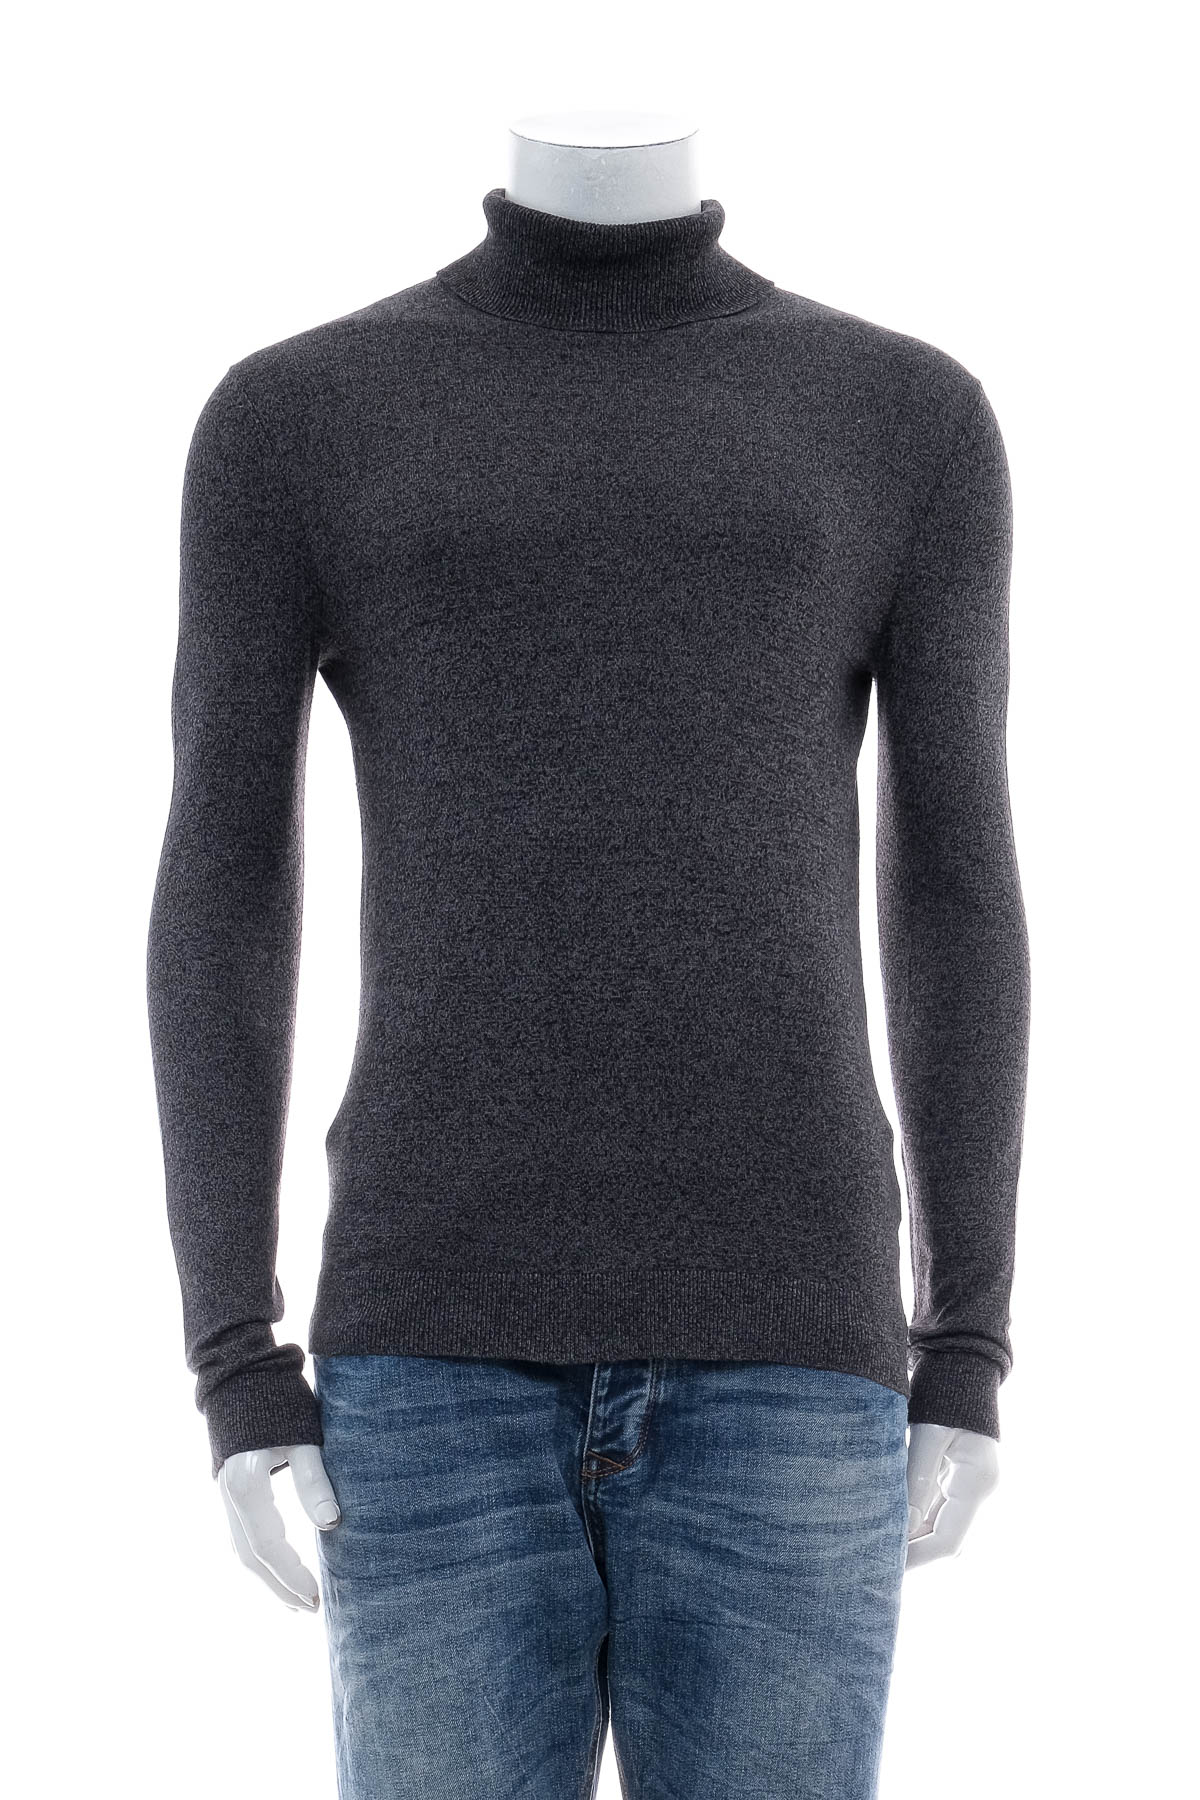 Men's sweater - TOPMAN - 0